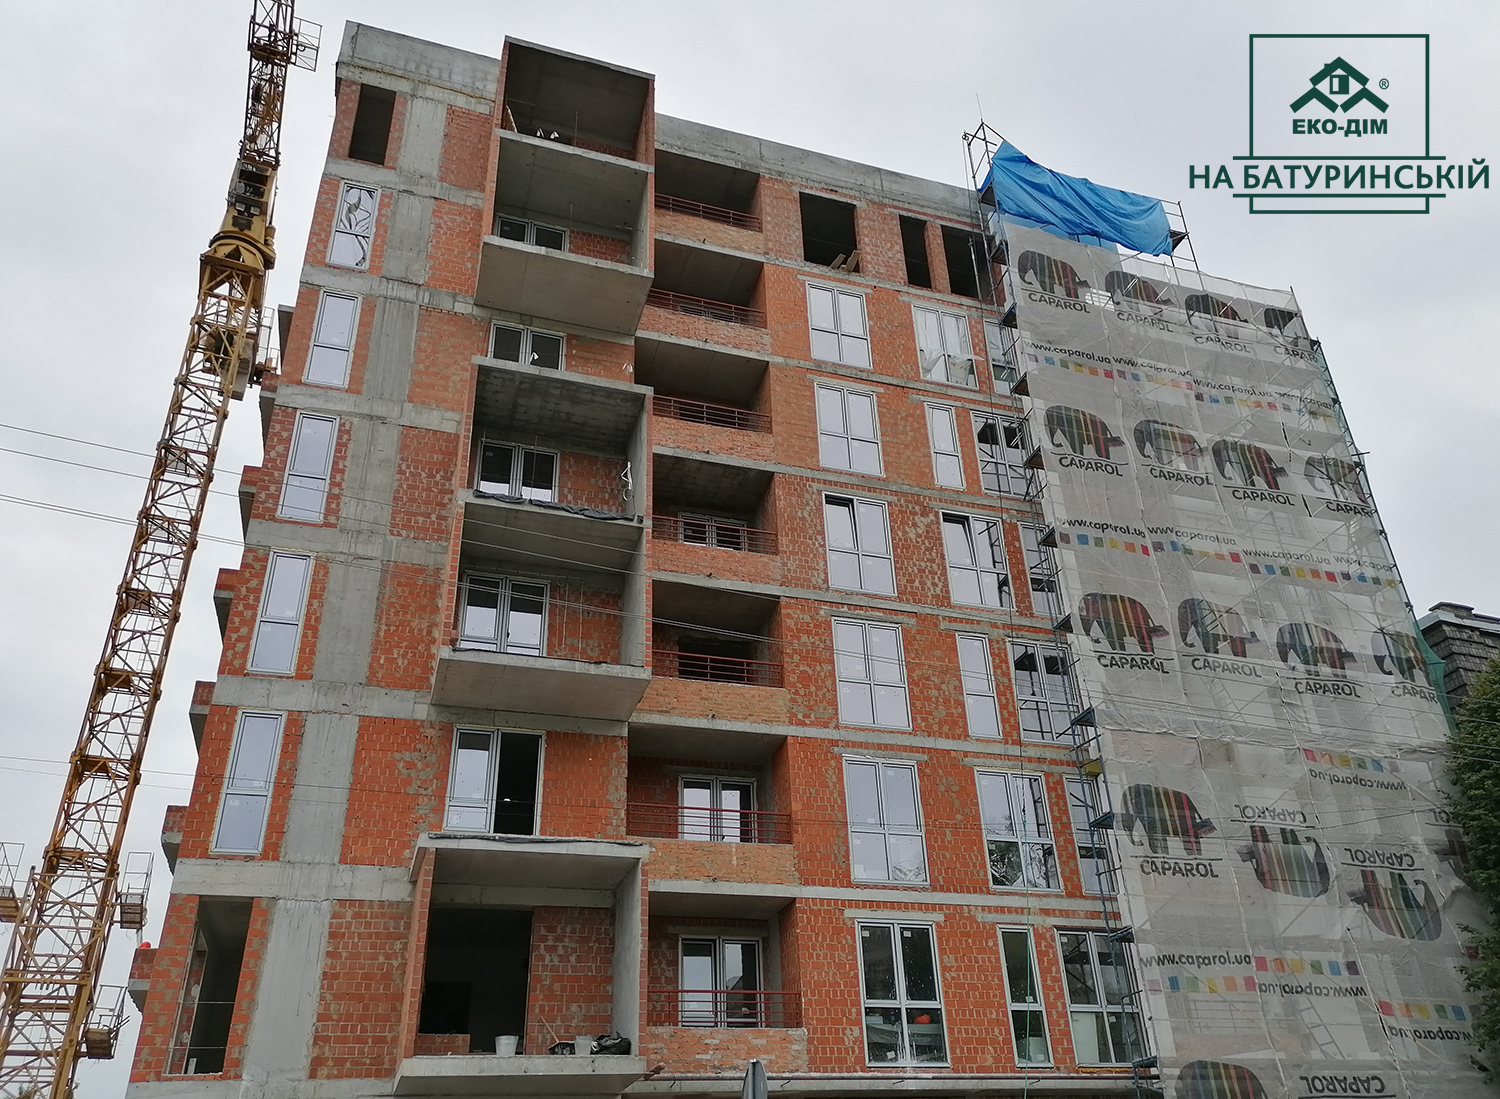 Ход строительства ЖК Эко-дом на Батуринской, июль, 2020 год